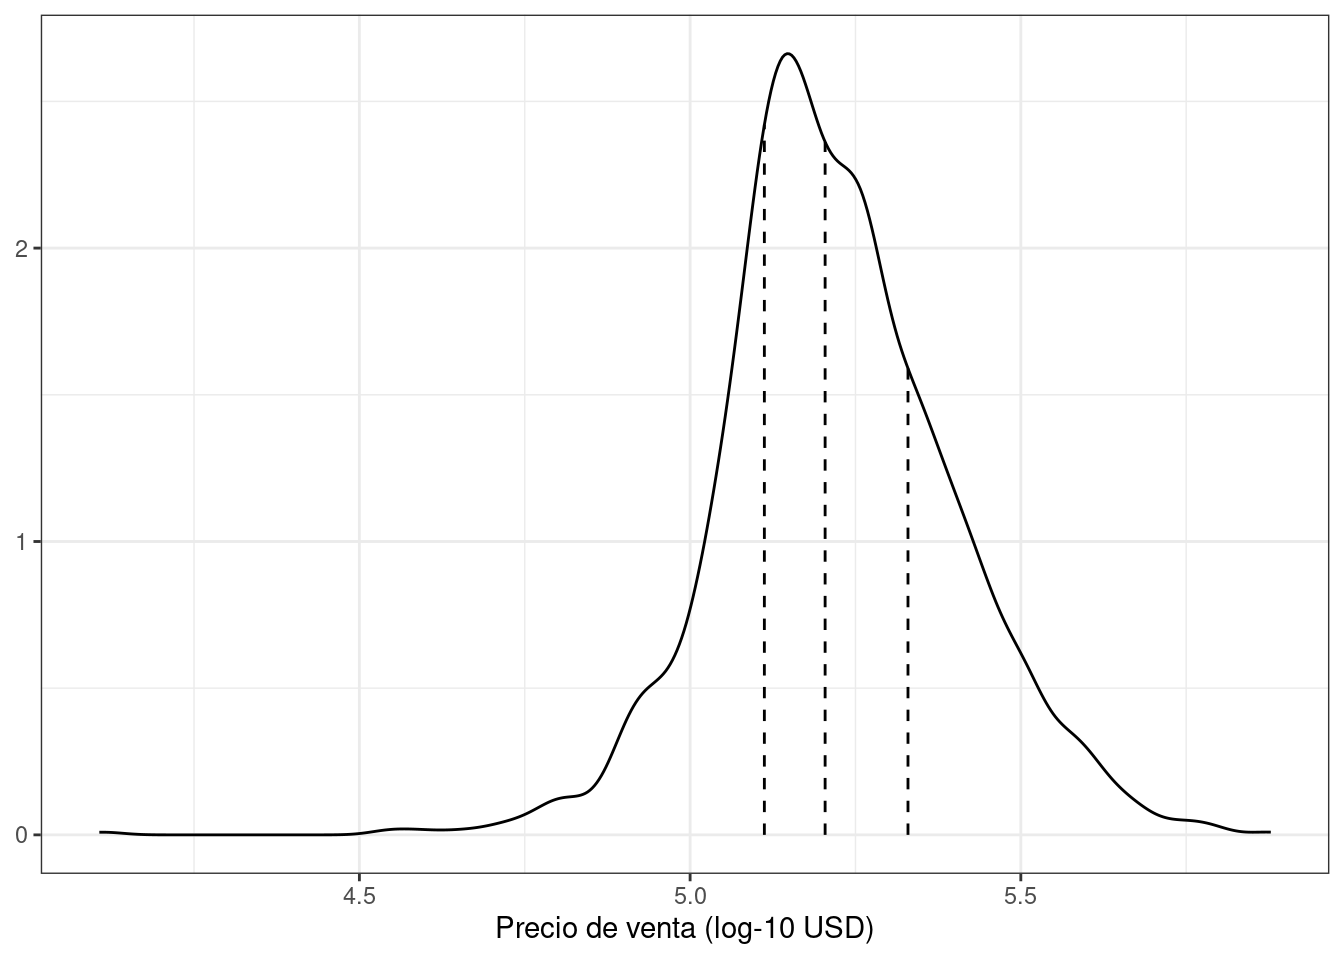 La distribución del precio de venta (en unidades logarítmicas) de los datos de vivienda de Ames. Las líneas verticales indican los cuartiles de los datos.